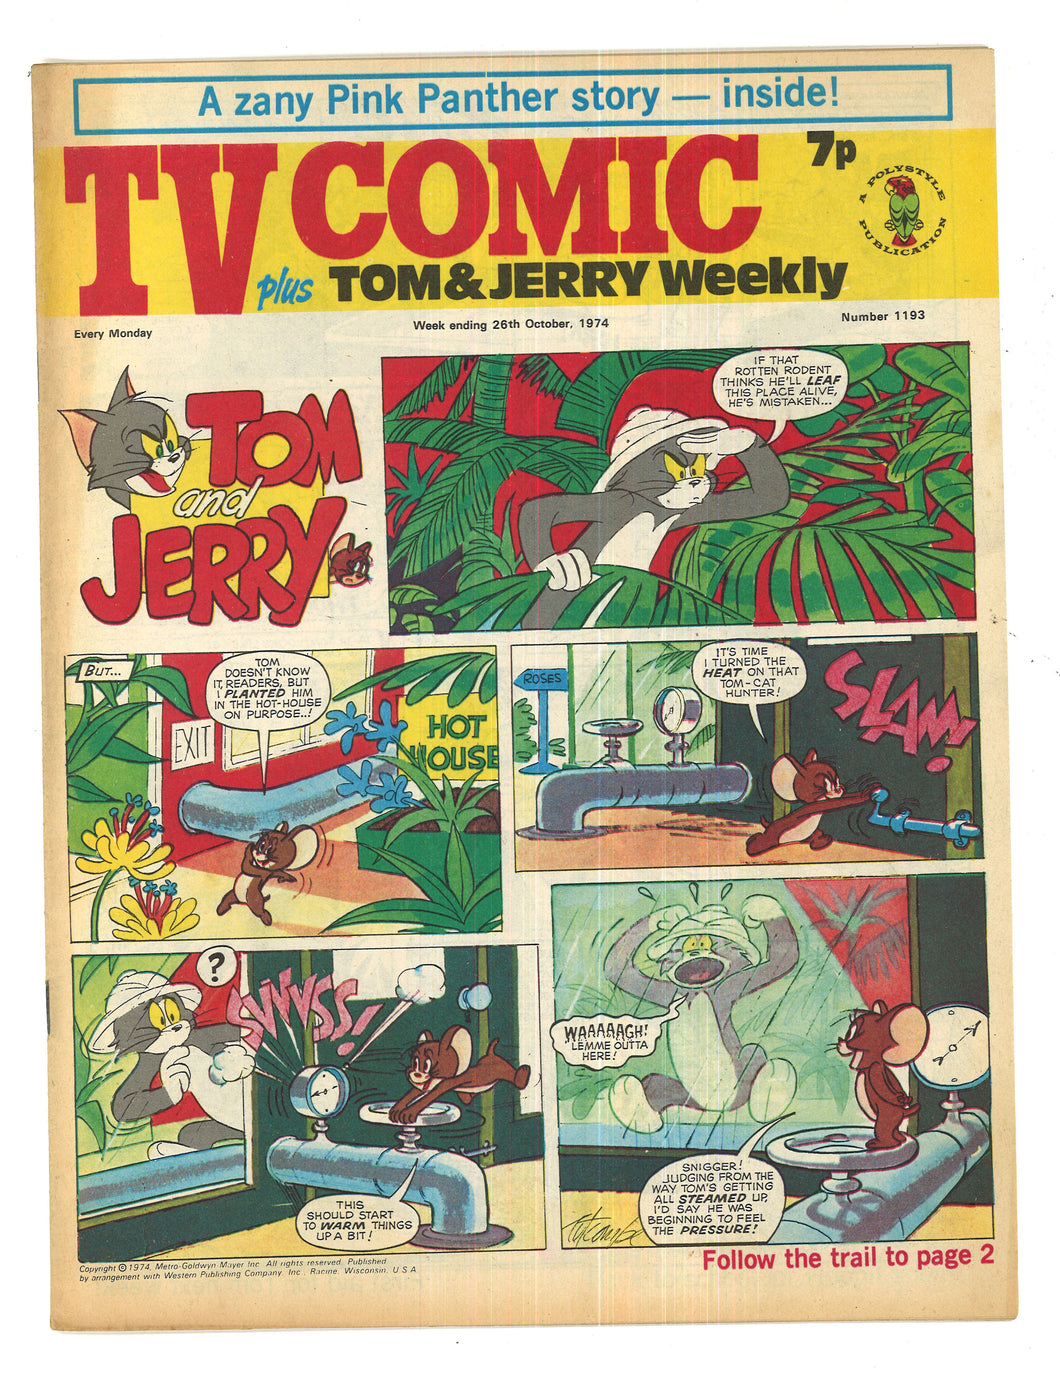 TV Comic No 1193 Oct 26 1974